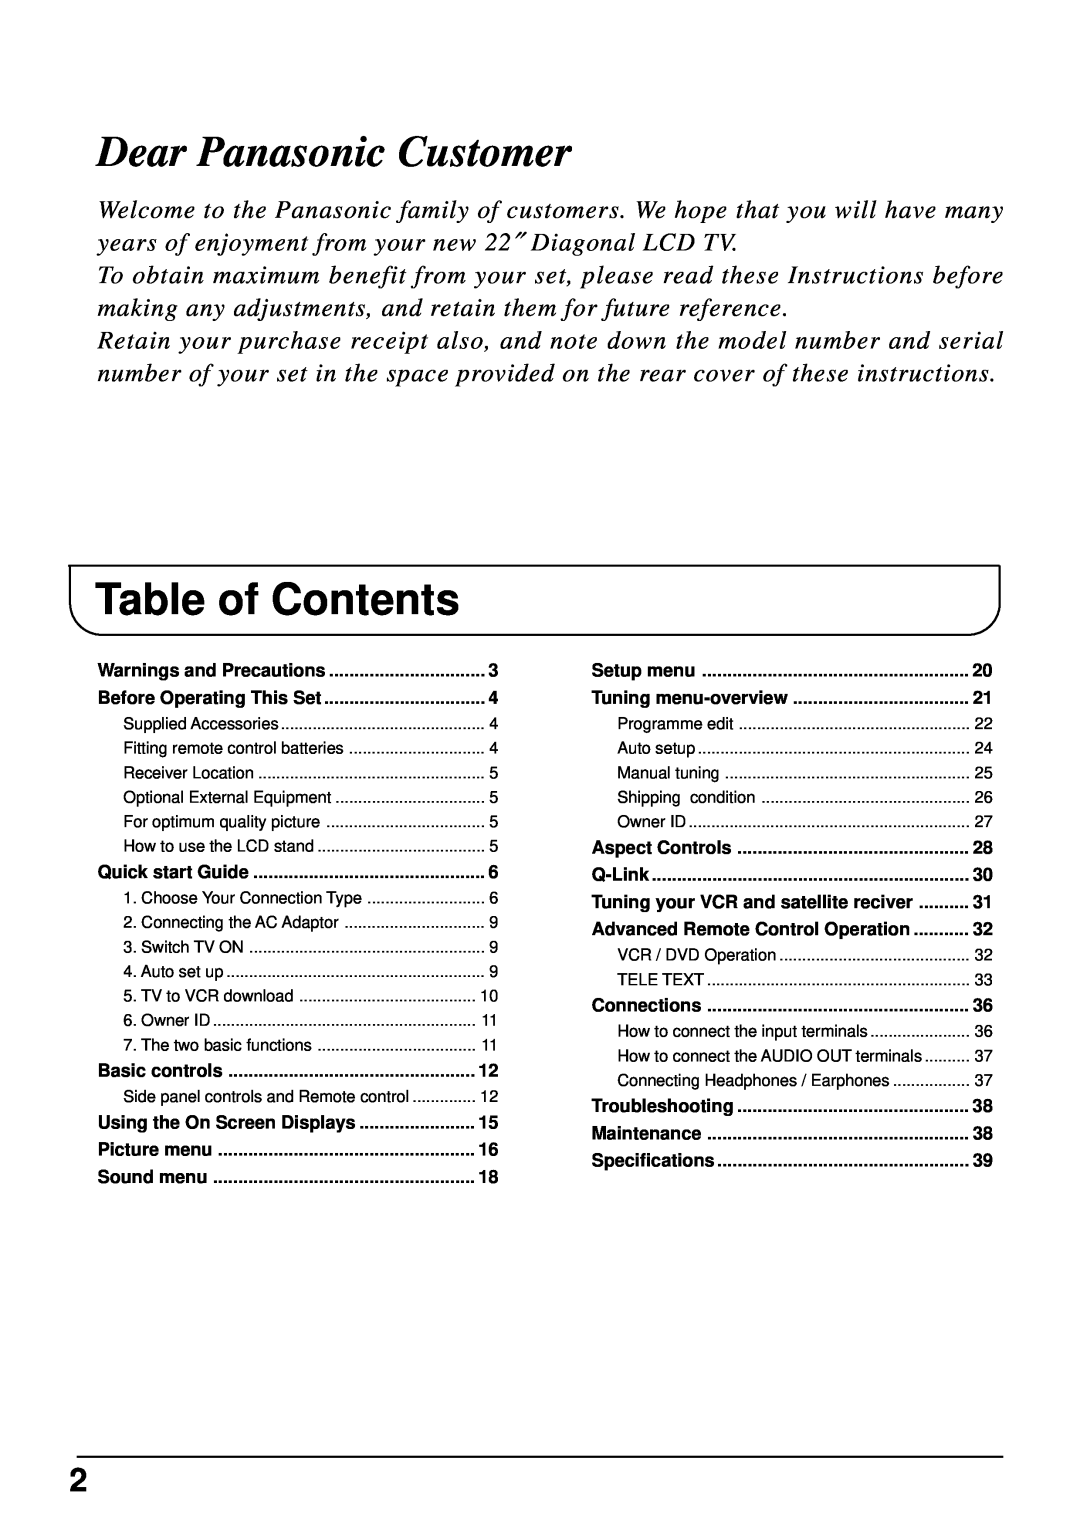 Panasonic TX-22LT2 manual Table of Contents, Dear Panasonic Customer 